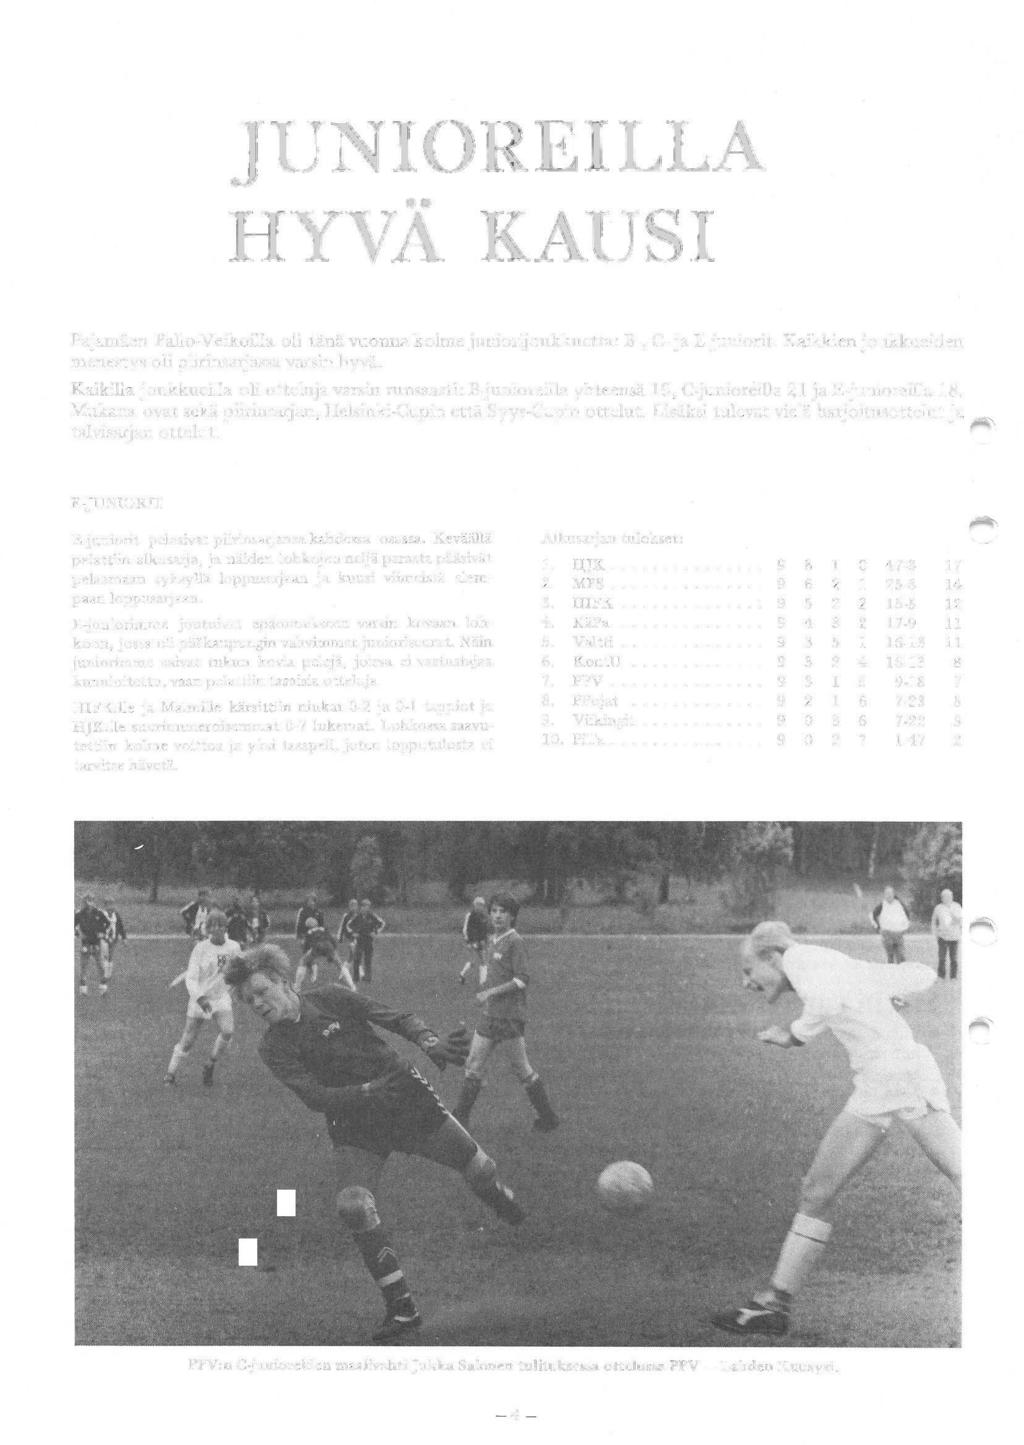 JUNIOREILLA HYVÄ KAUSI Pajamäen Pallo-Veikoilla oli tänä vuonna kolme juniorijoukkuetta: B-, C- ja E-juniorit. Kaikkien joukkueiden menestys oli piirinsarjassa varsin hyvä.